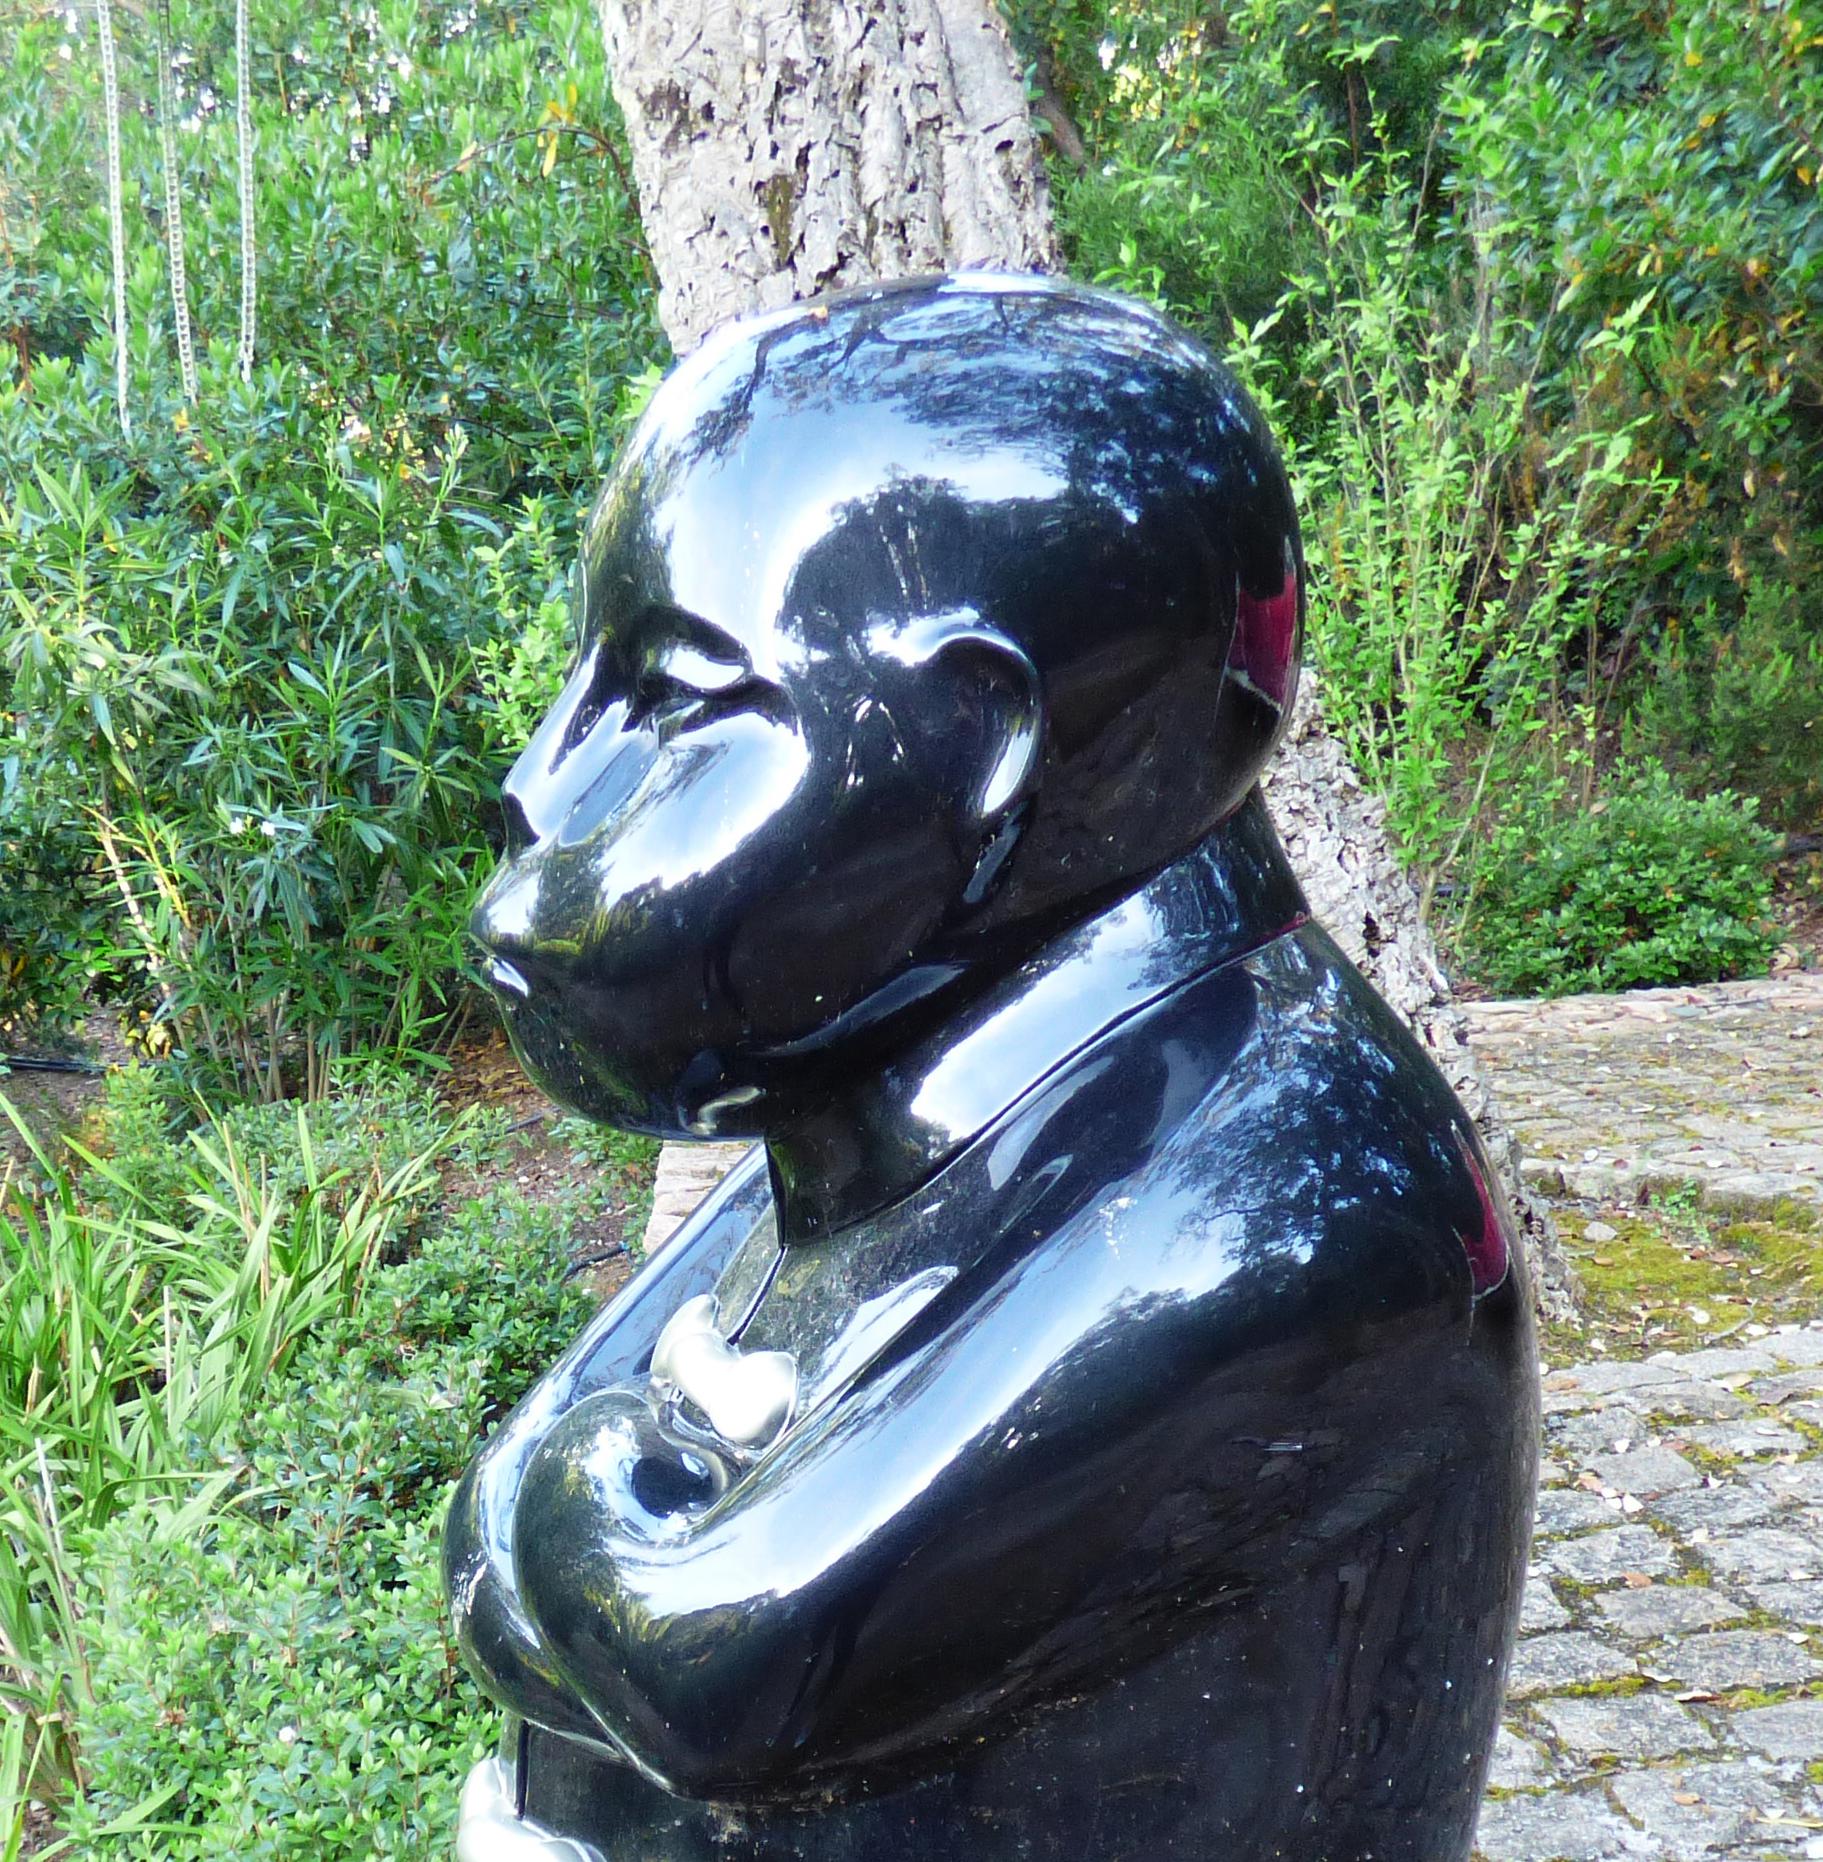 Marikos Skulpturen sind einzigartige und monumentale zeitgenössische Werke, die aus Harz gefertigt und mit einer inneren Metallstruktur verstärkt sind. Sie sind mit einer Zweikomponenten-Urethanfarbe lackiert, die extrem UV- und witterungsbeständig